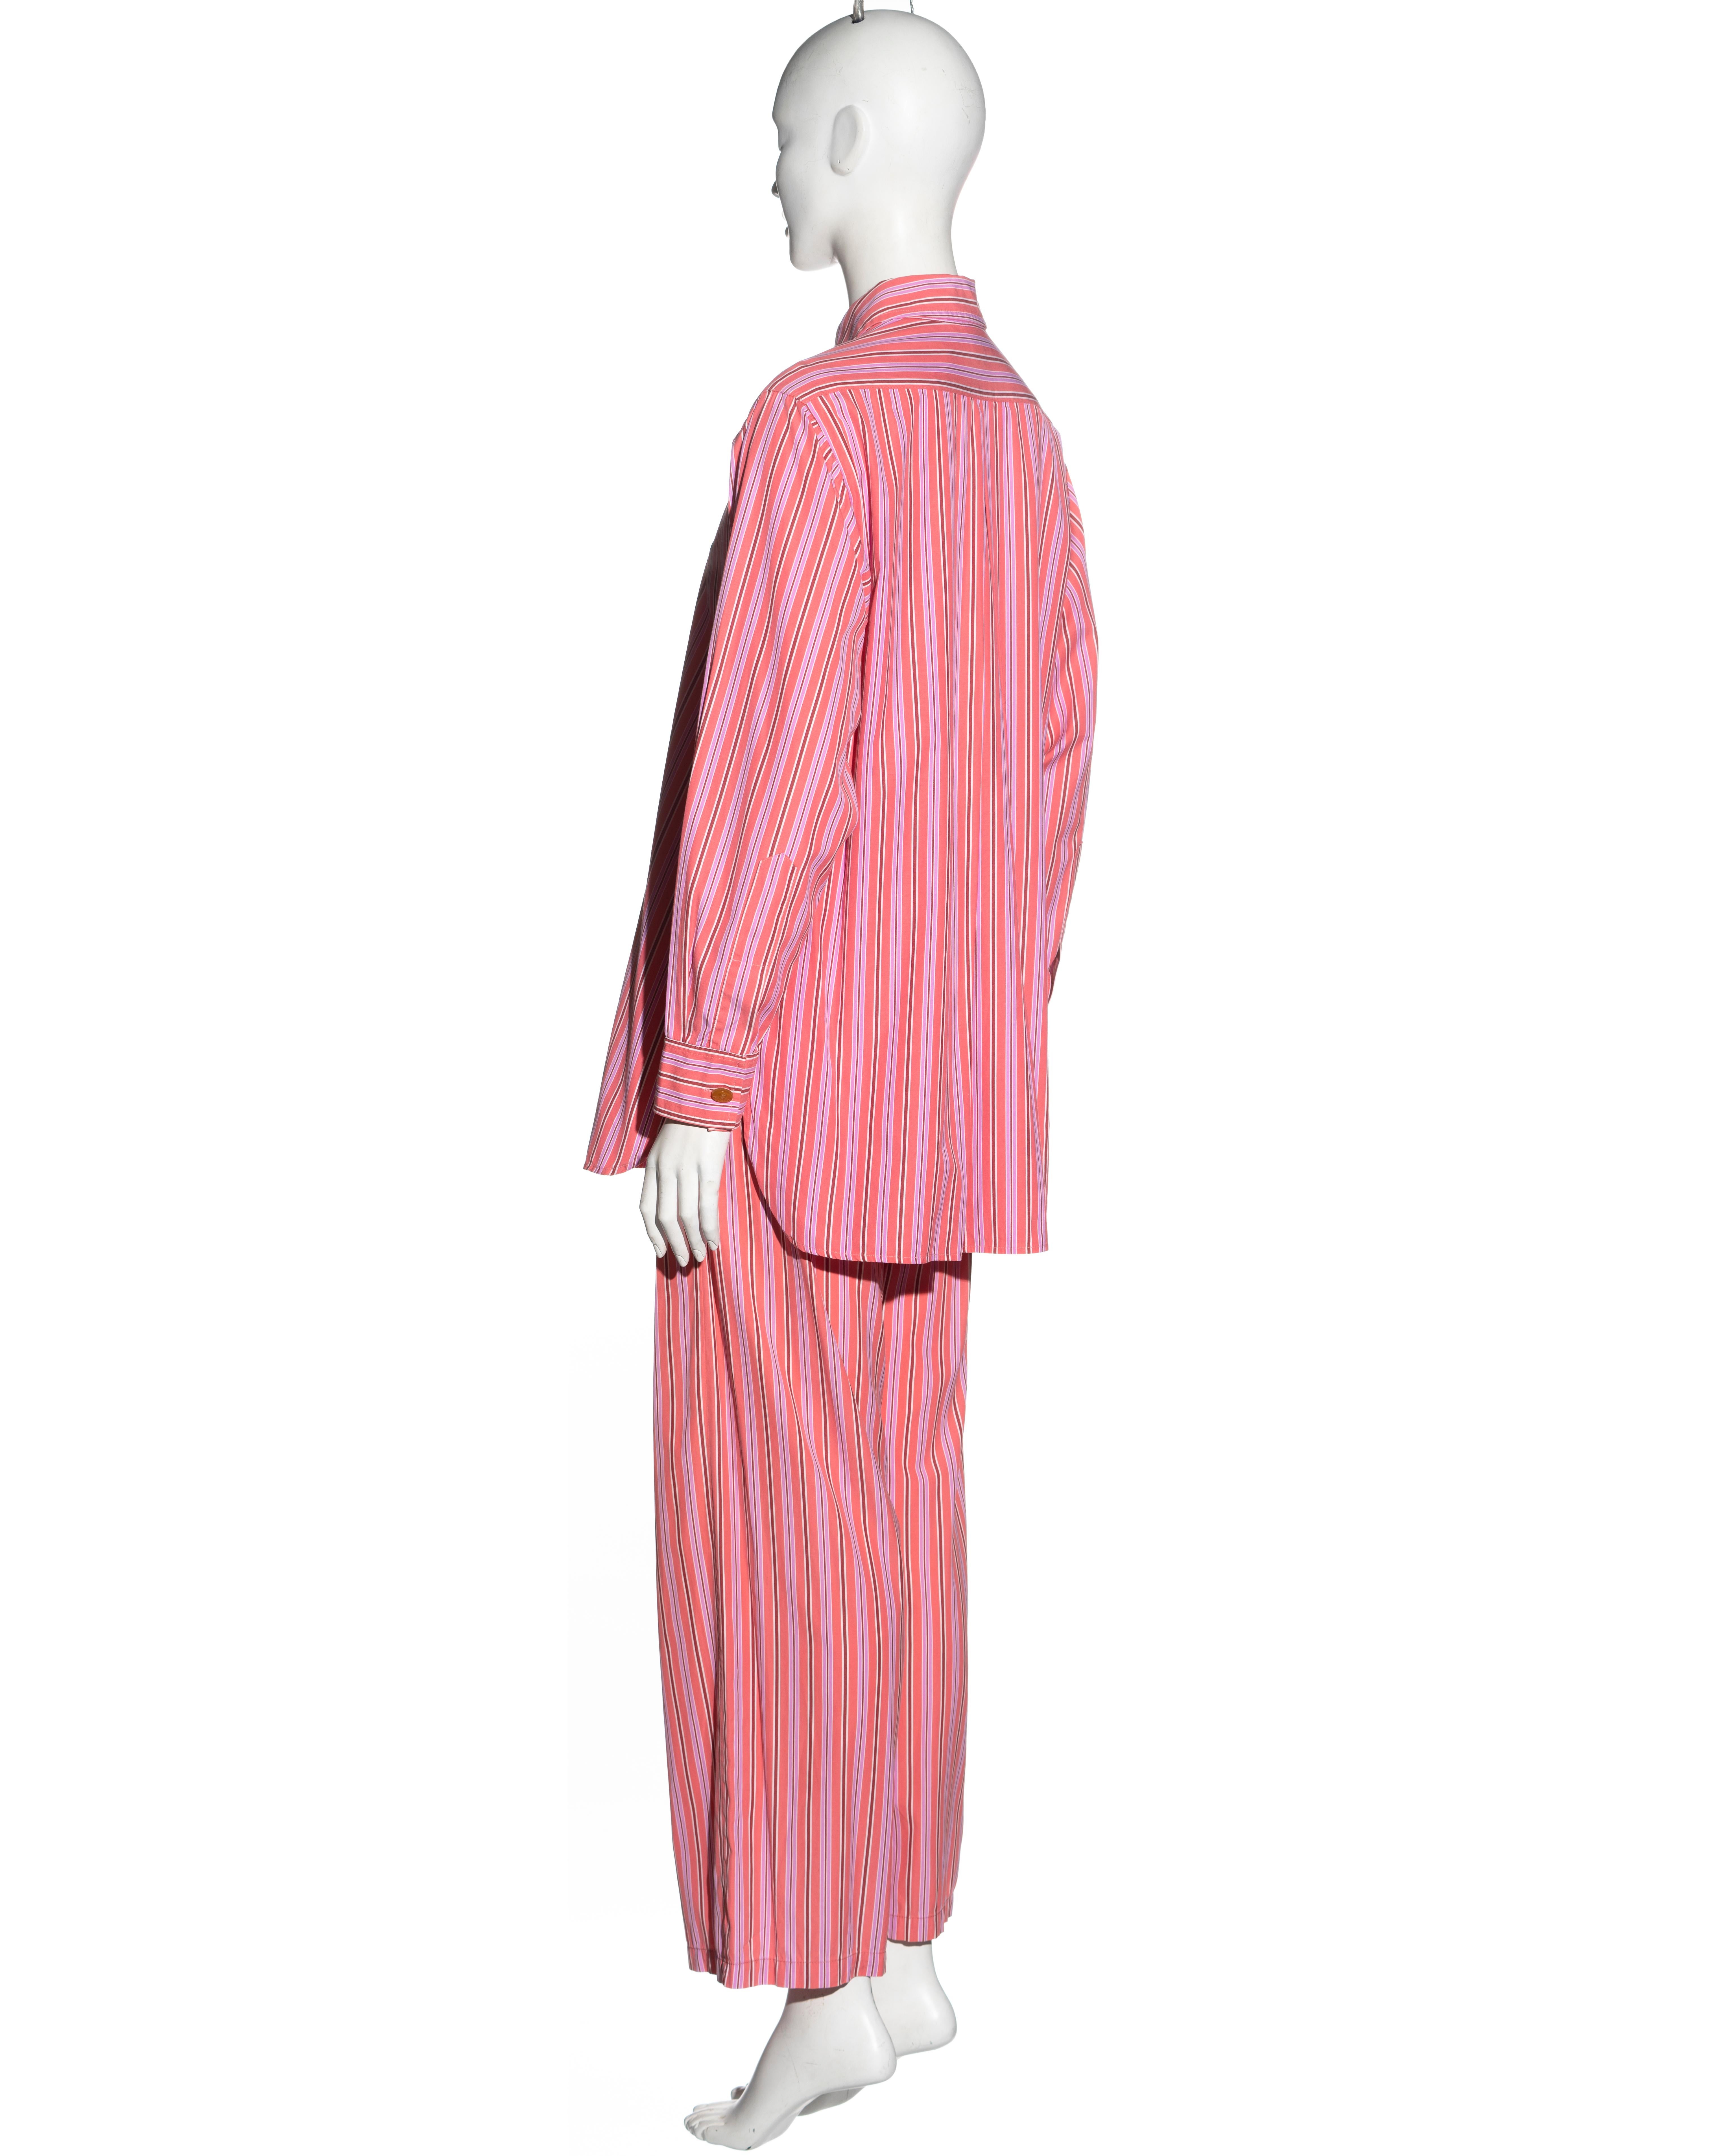 Vivienne Westwood pink striped cotton 3-piece suit, ss 1993 For Sale 9